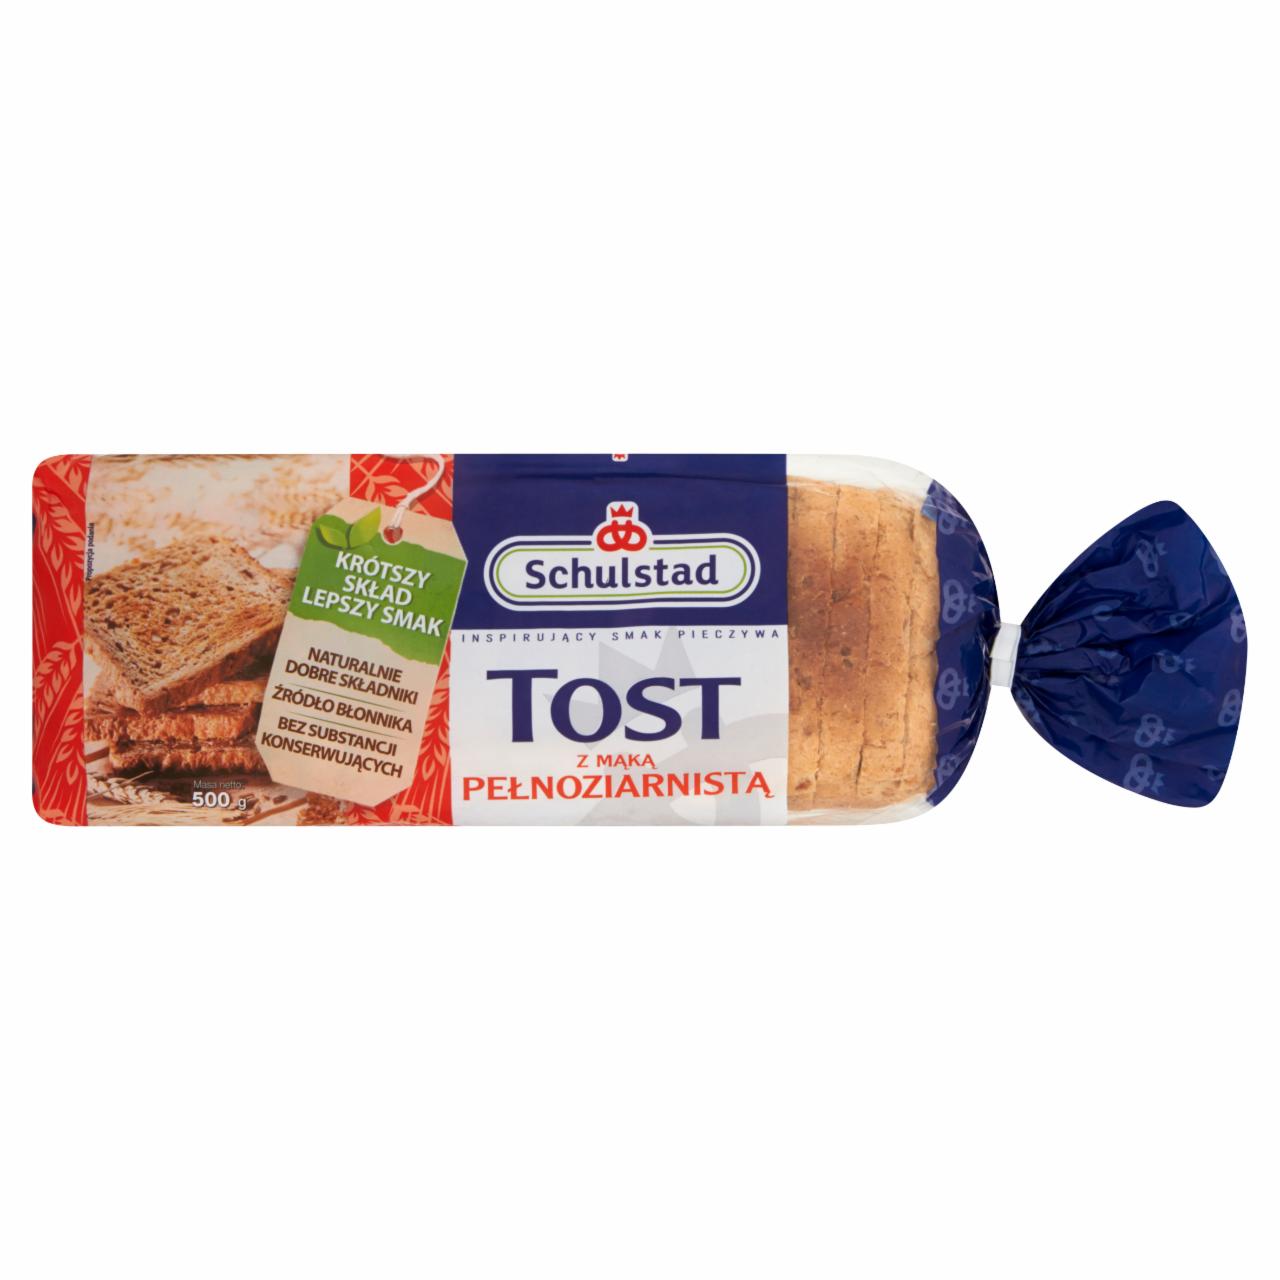 Zdjęcia - Schulstad Tost z mąką pełnoziarnistą Chleb tostowy 500 g